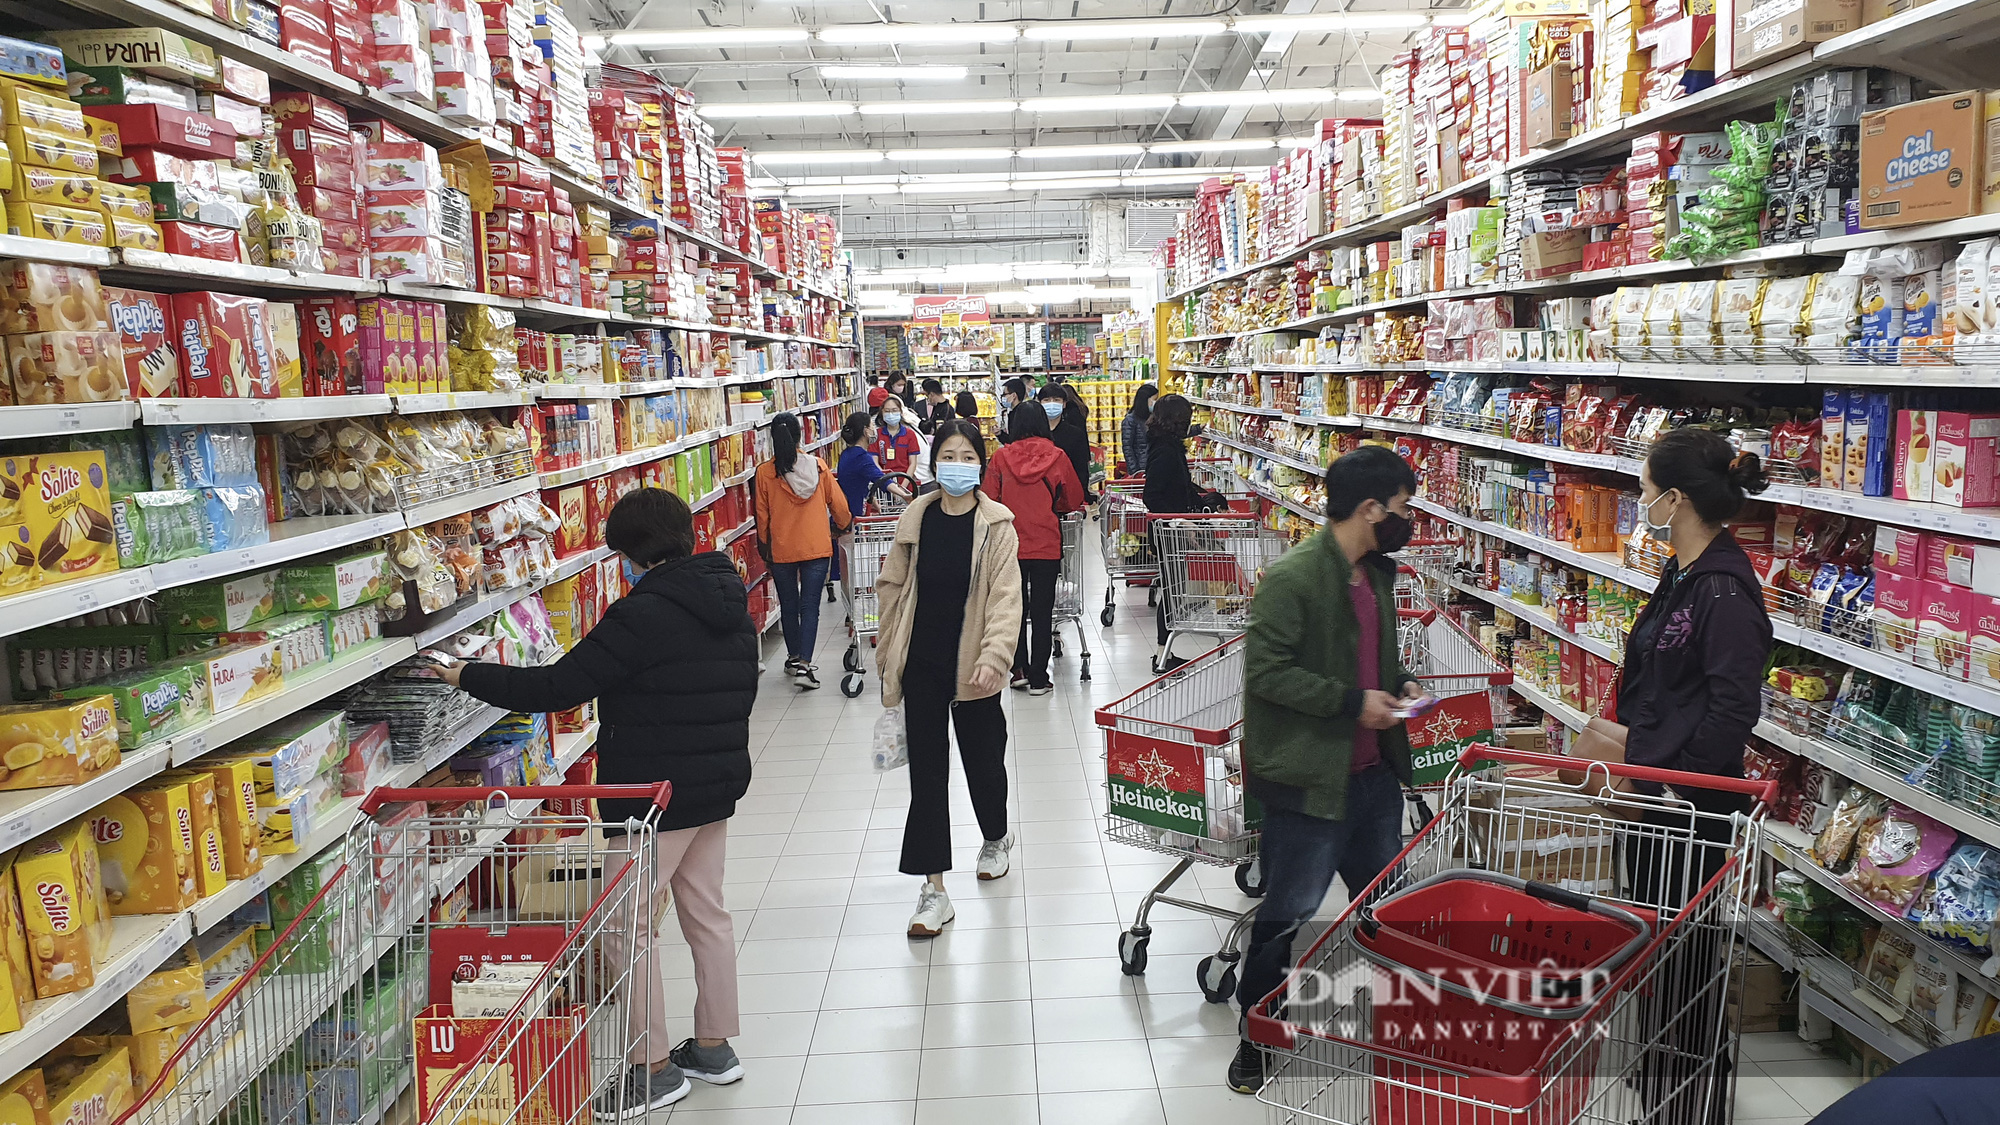 Bất chấp dịch Covid-19, siêu thị vẫn đông nghịt người mua sắm Tết  - Ảnh 6.